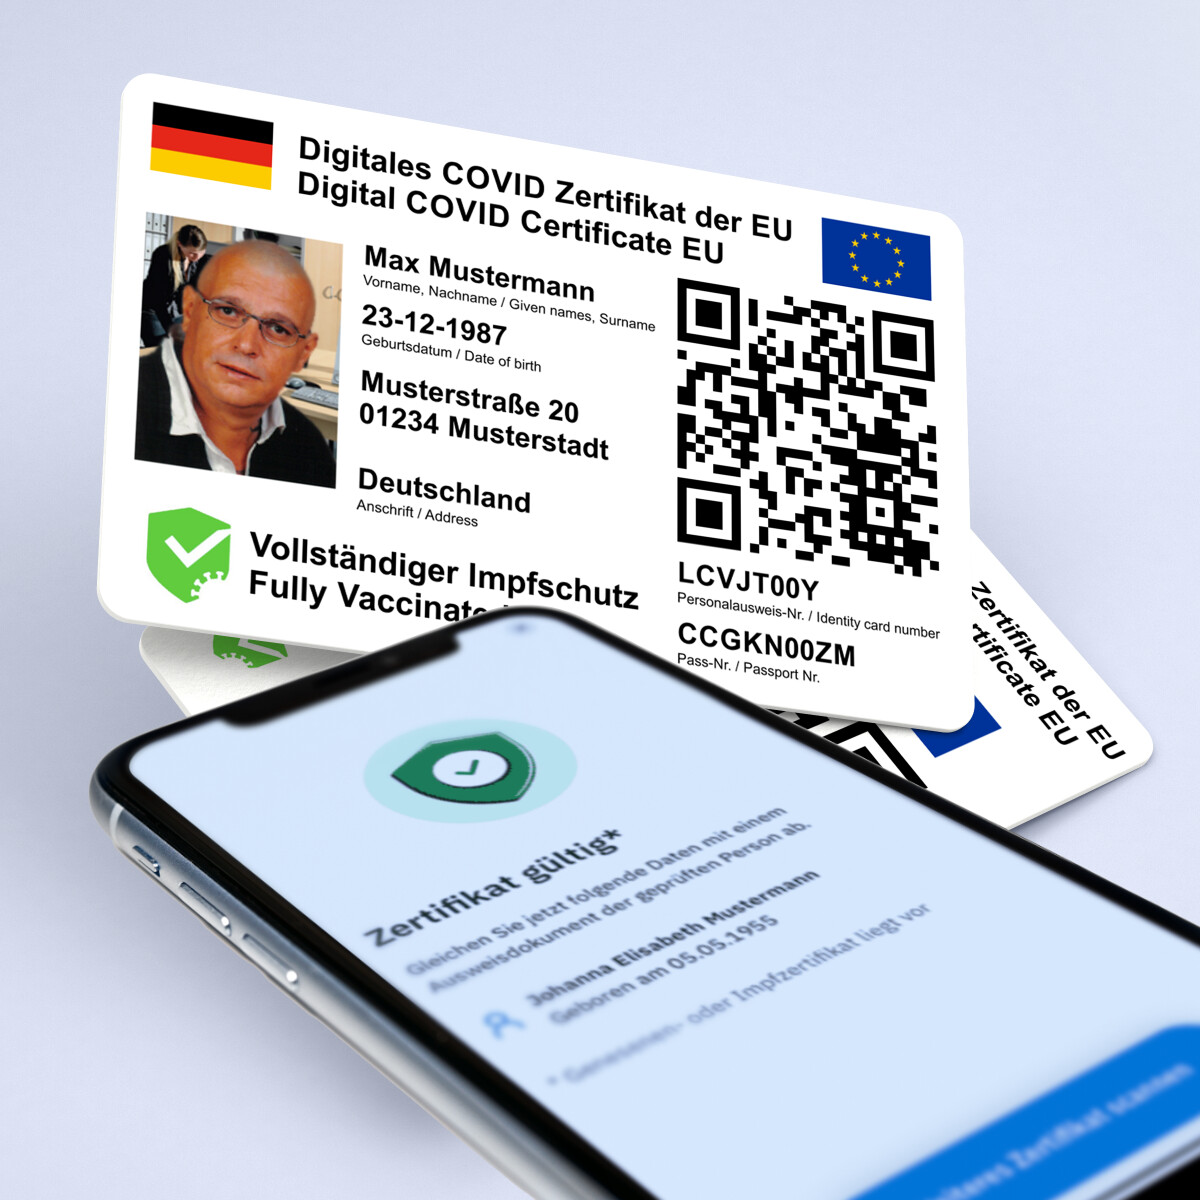 Ihr digitales COVID-19 Impf-Zertifikat der EU - mit Lichtbild - auf eine Plastikkarte im Kreditkartenformat drucken lassen (DE/EN - Besonders für Auslandsreisen geeignet)